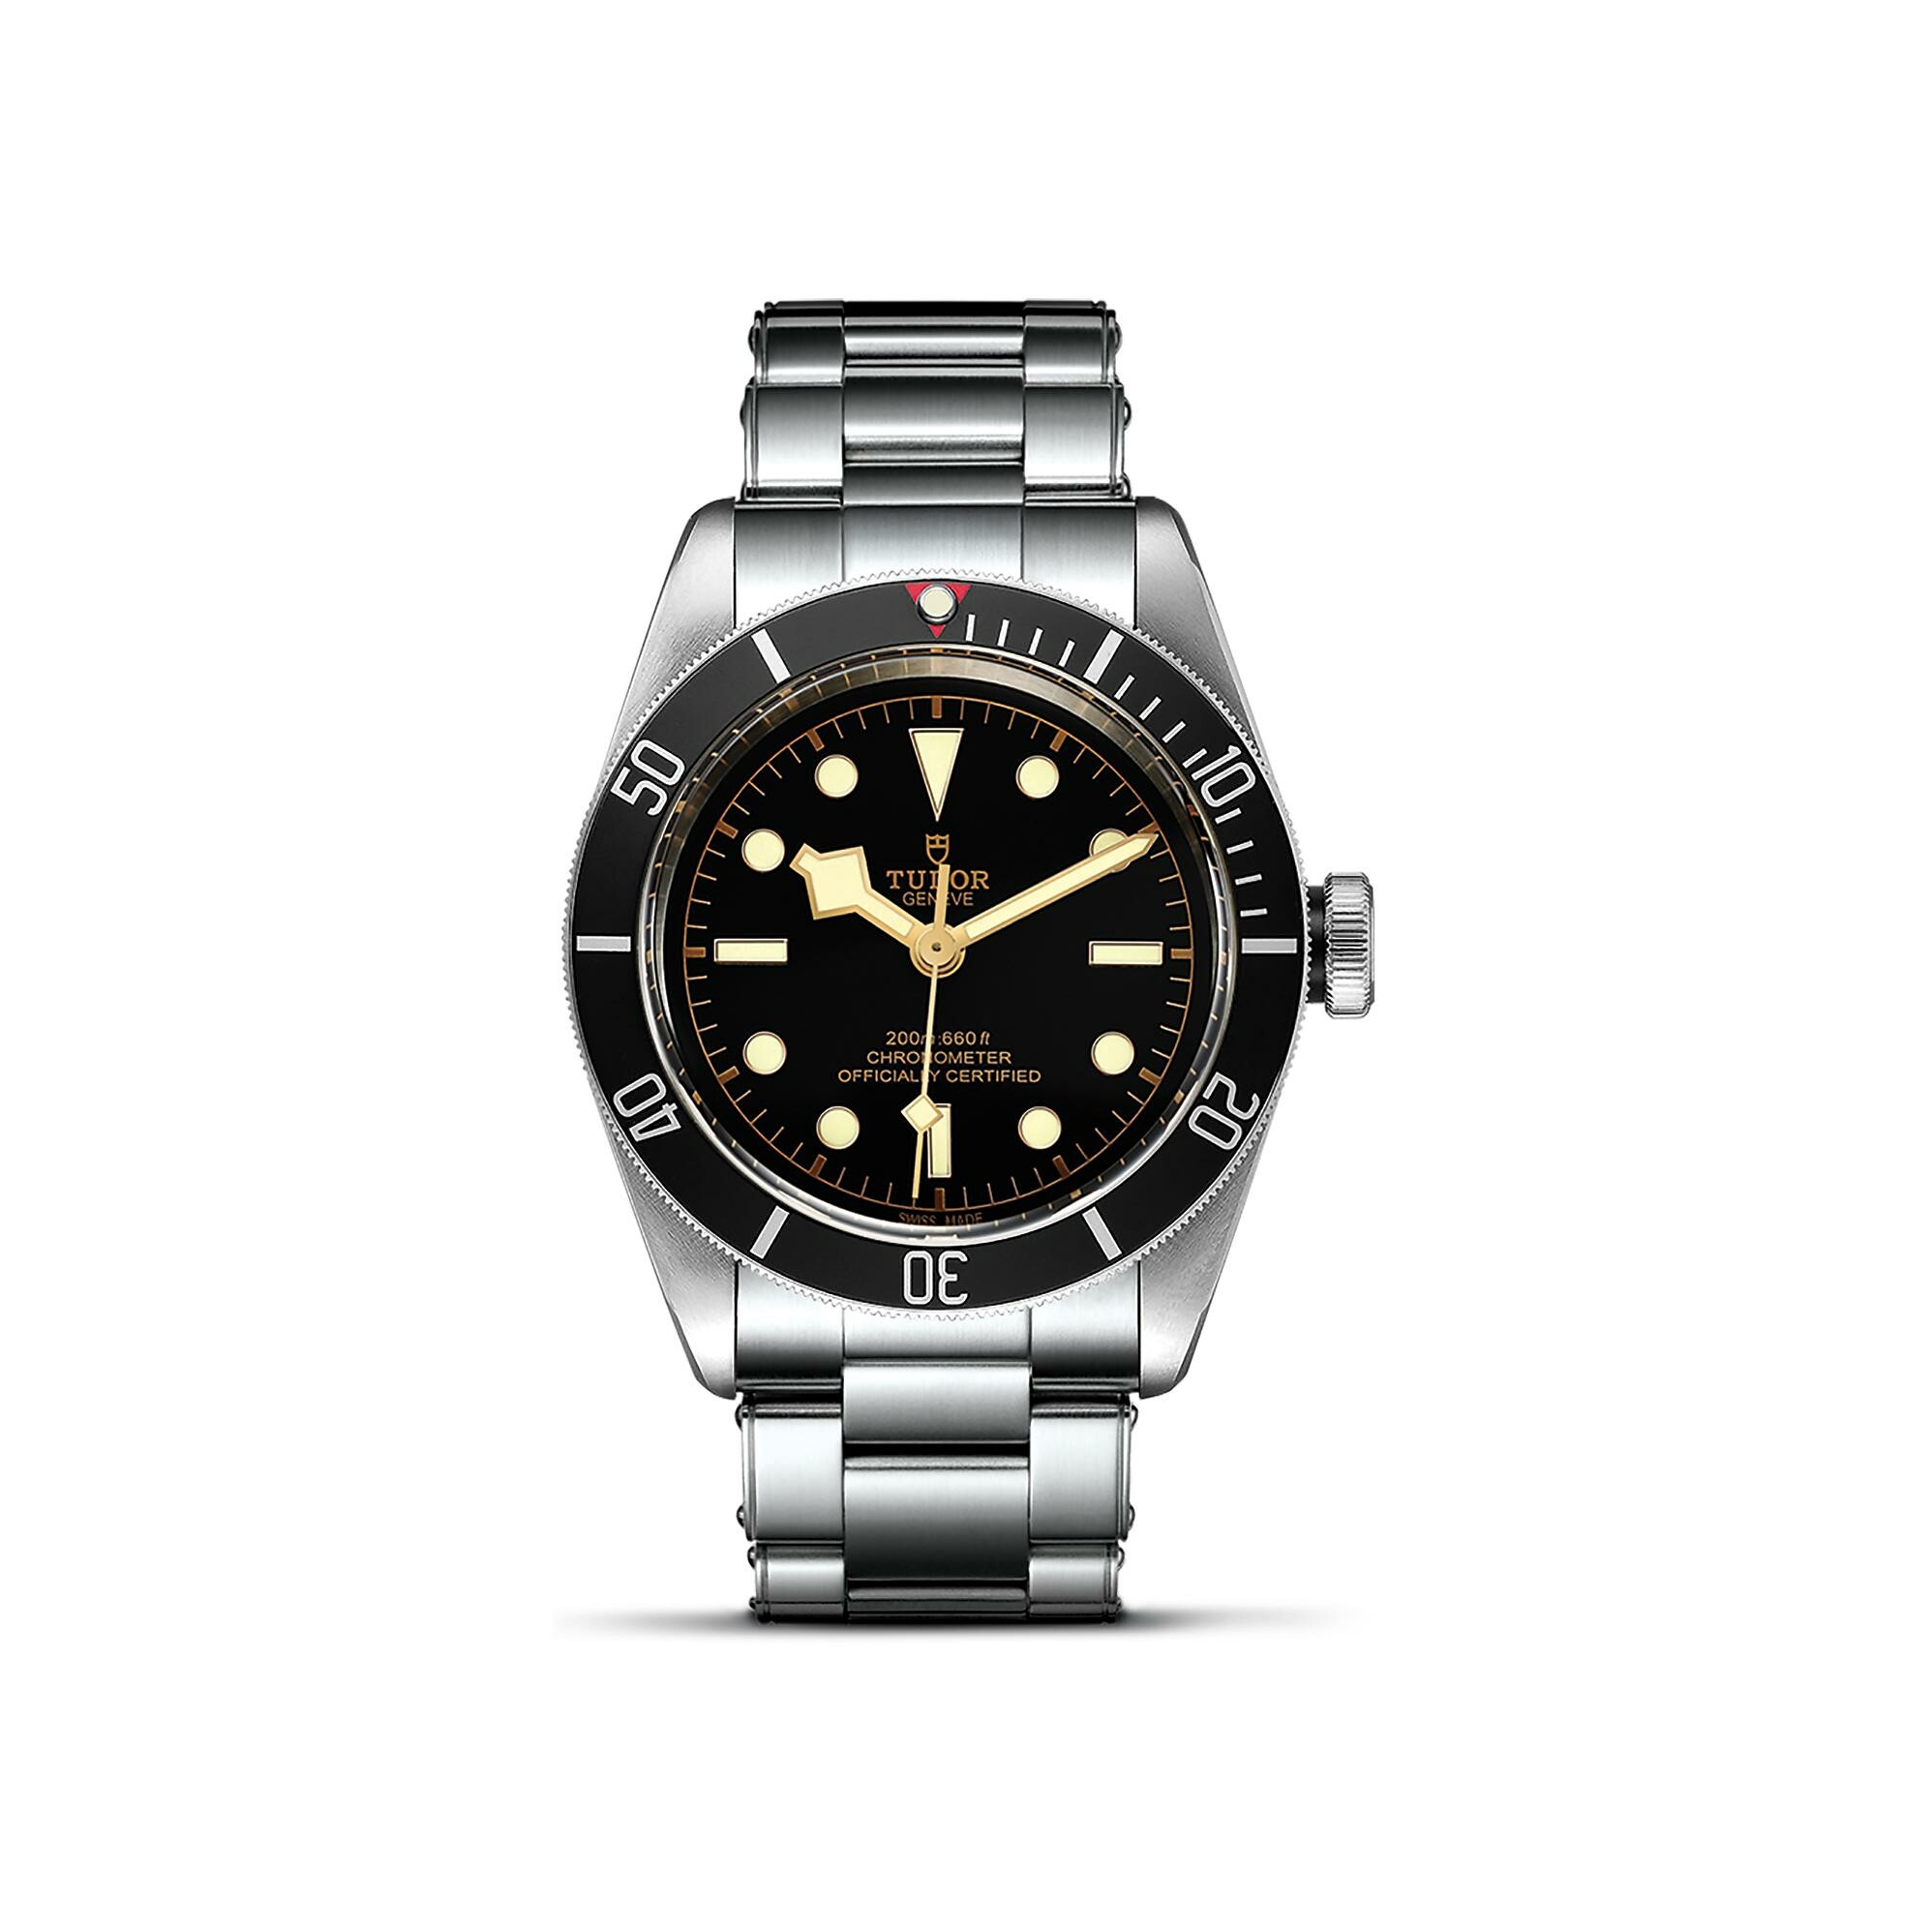 Purchase TUDOR Black Bay watch, 41 mm steel case, rivet steel bracelet